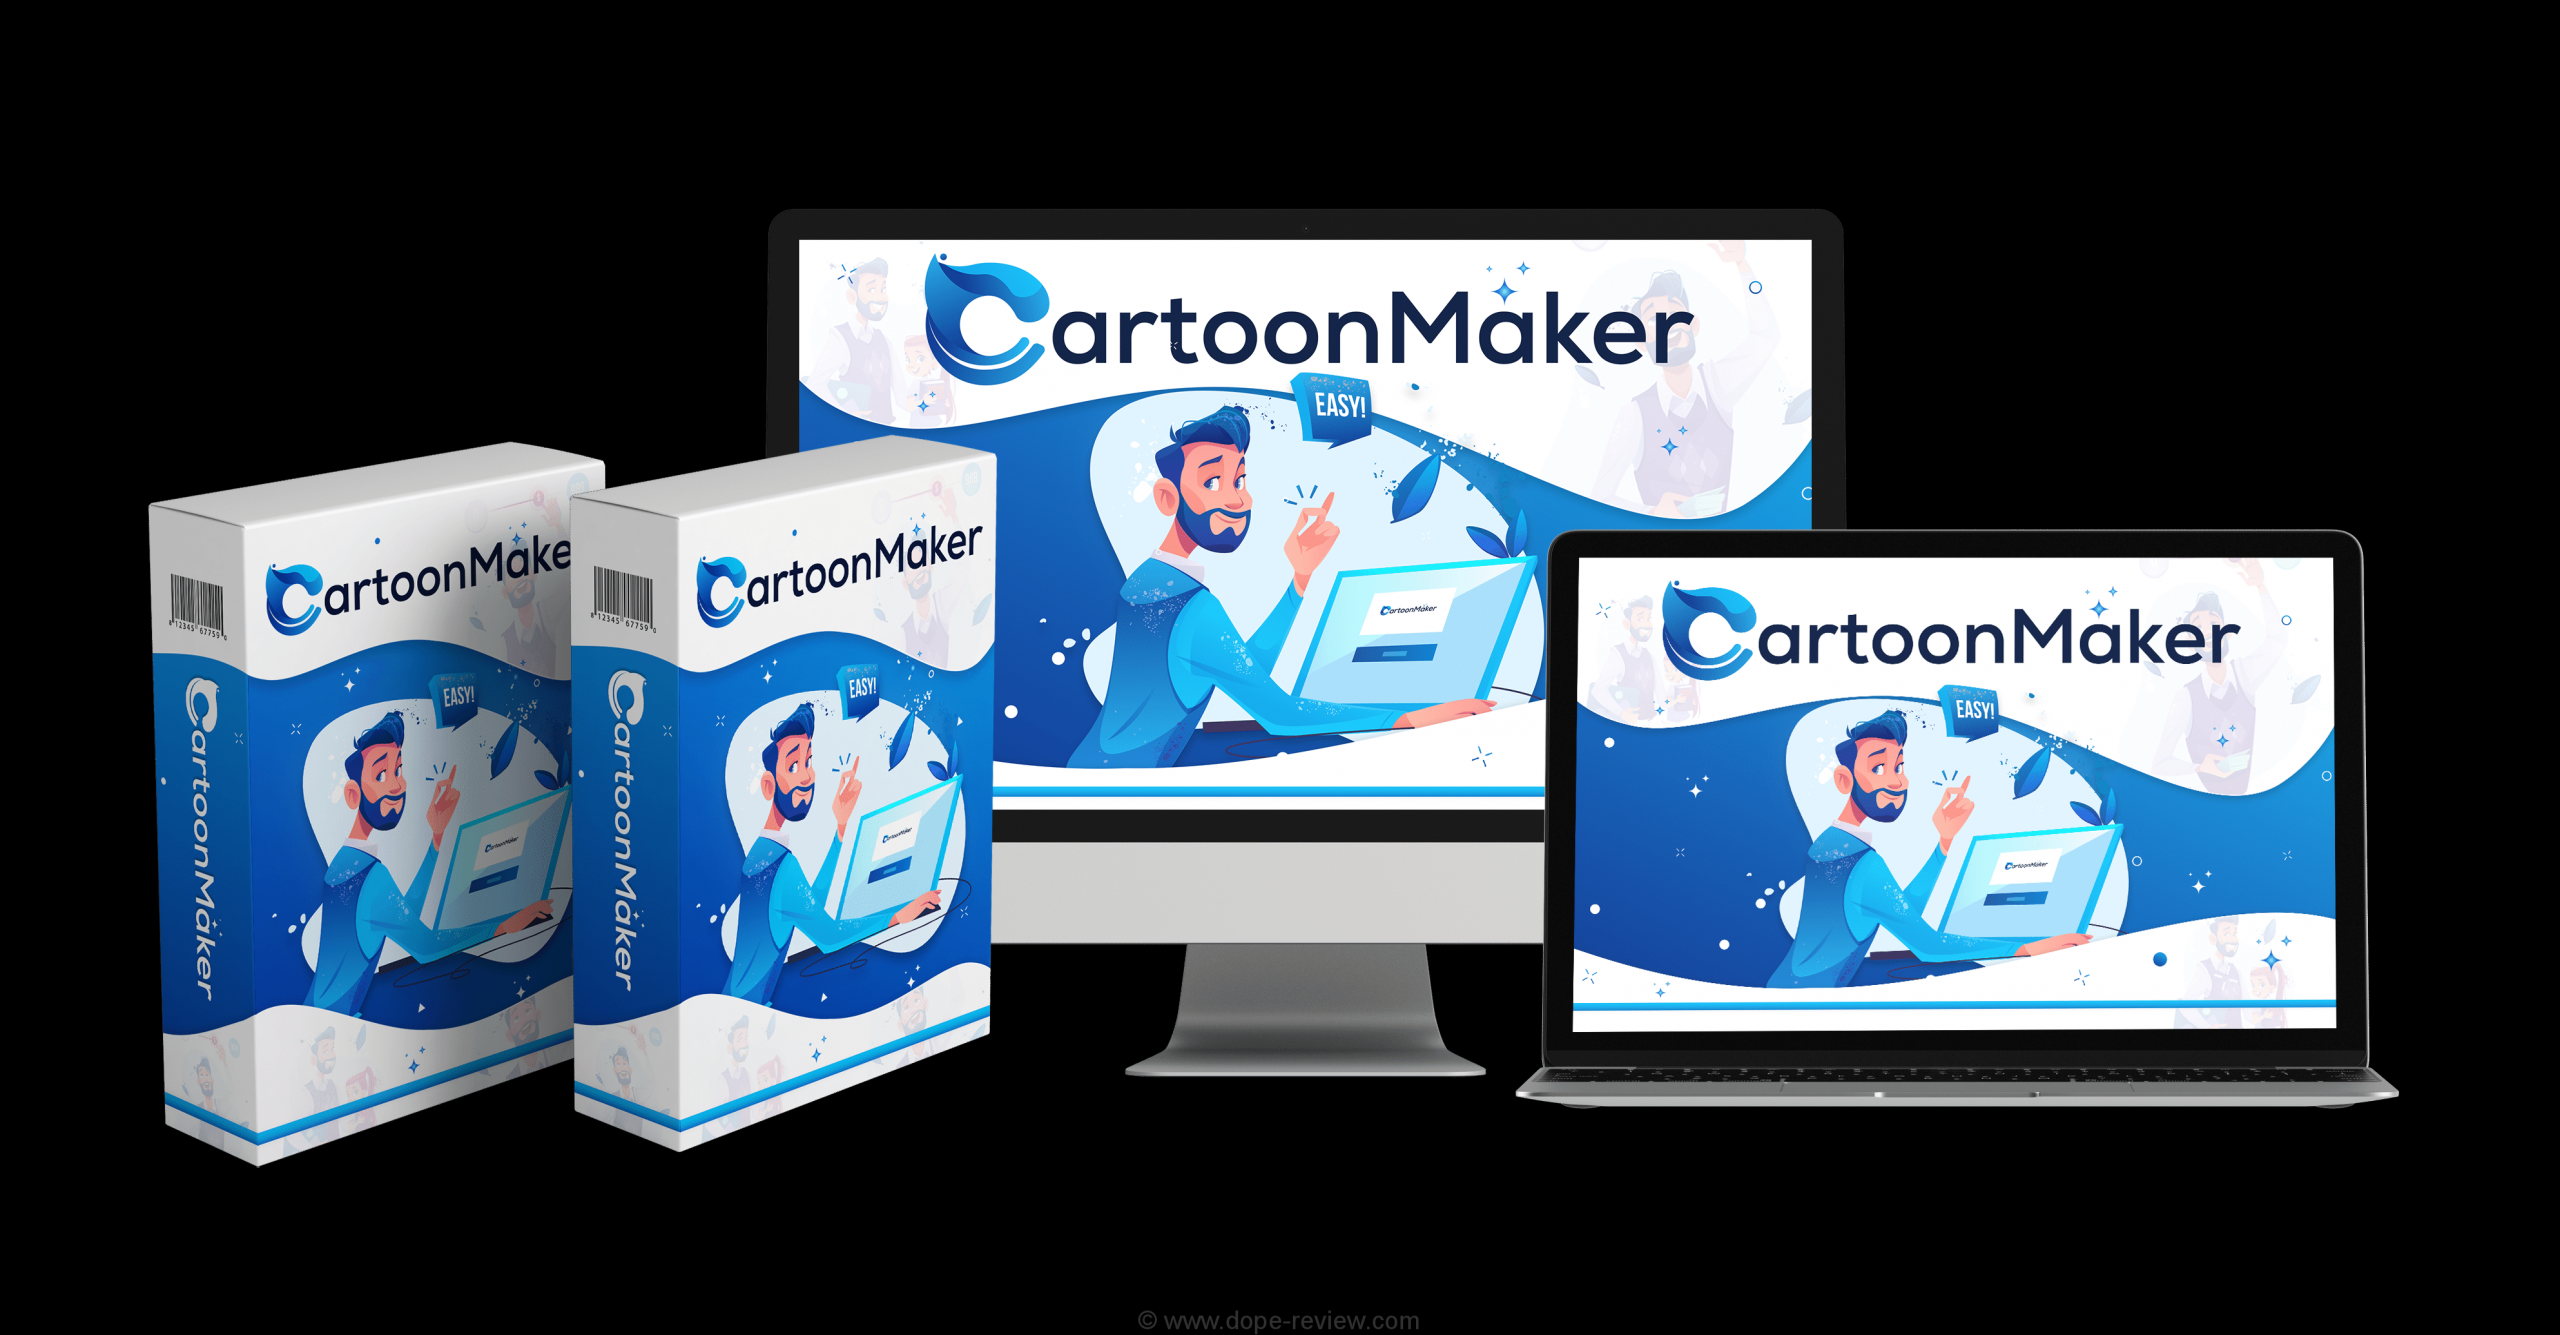 CartoonMaker